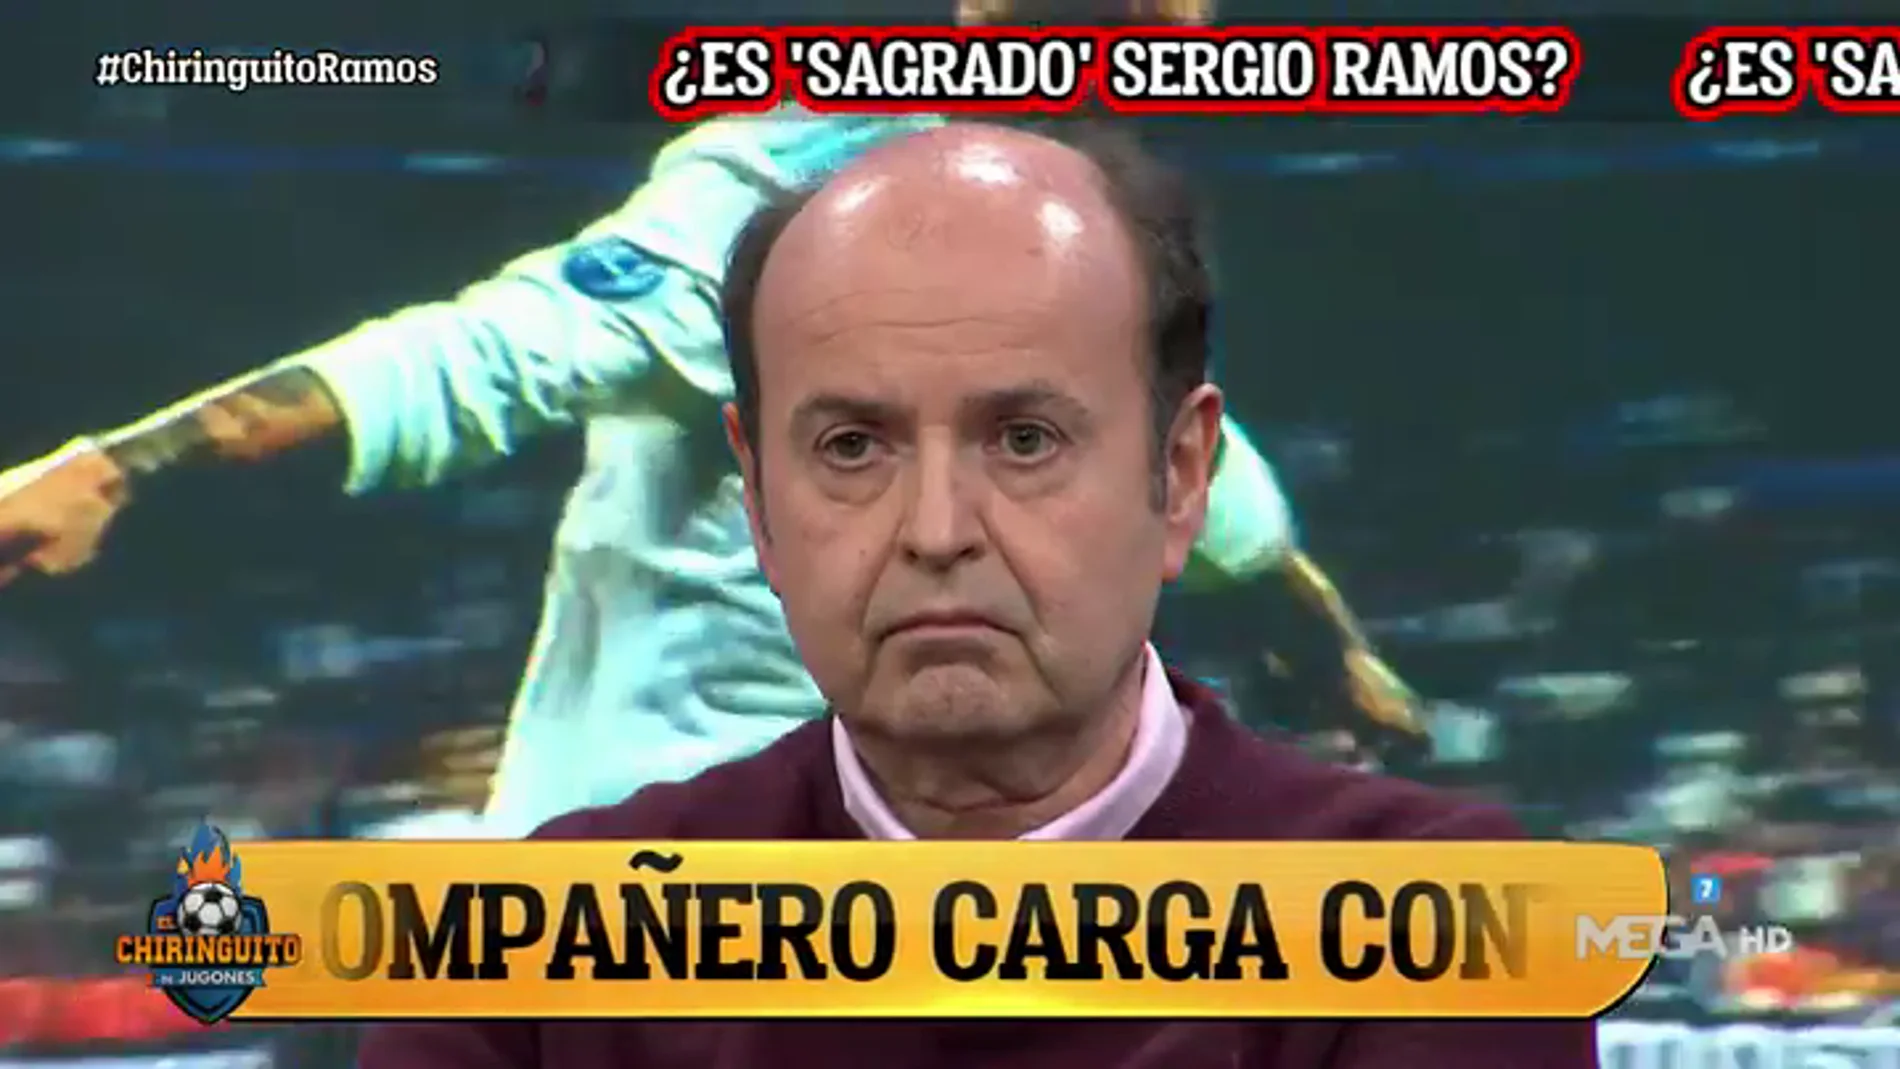 "RAMOS NO ES 'SAGRADO'"